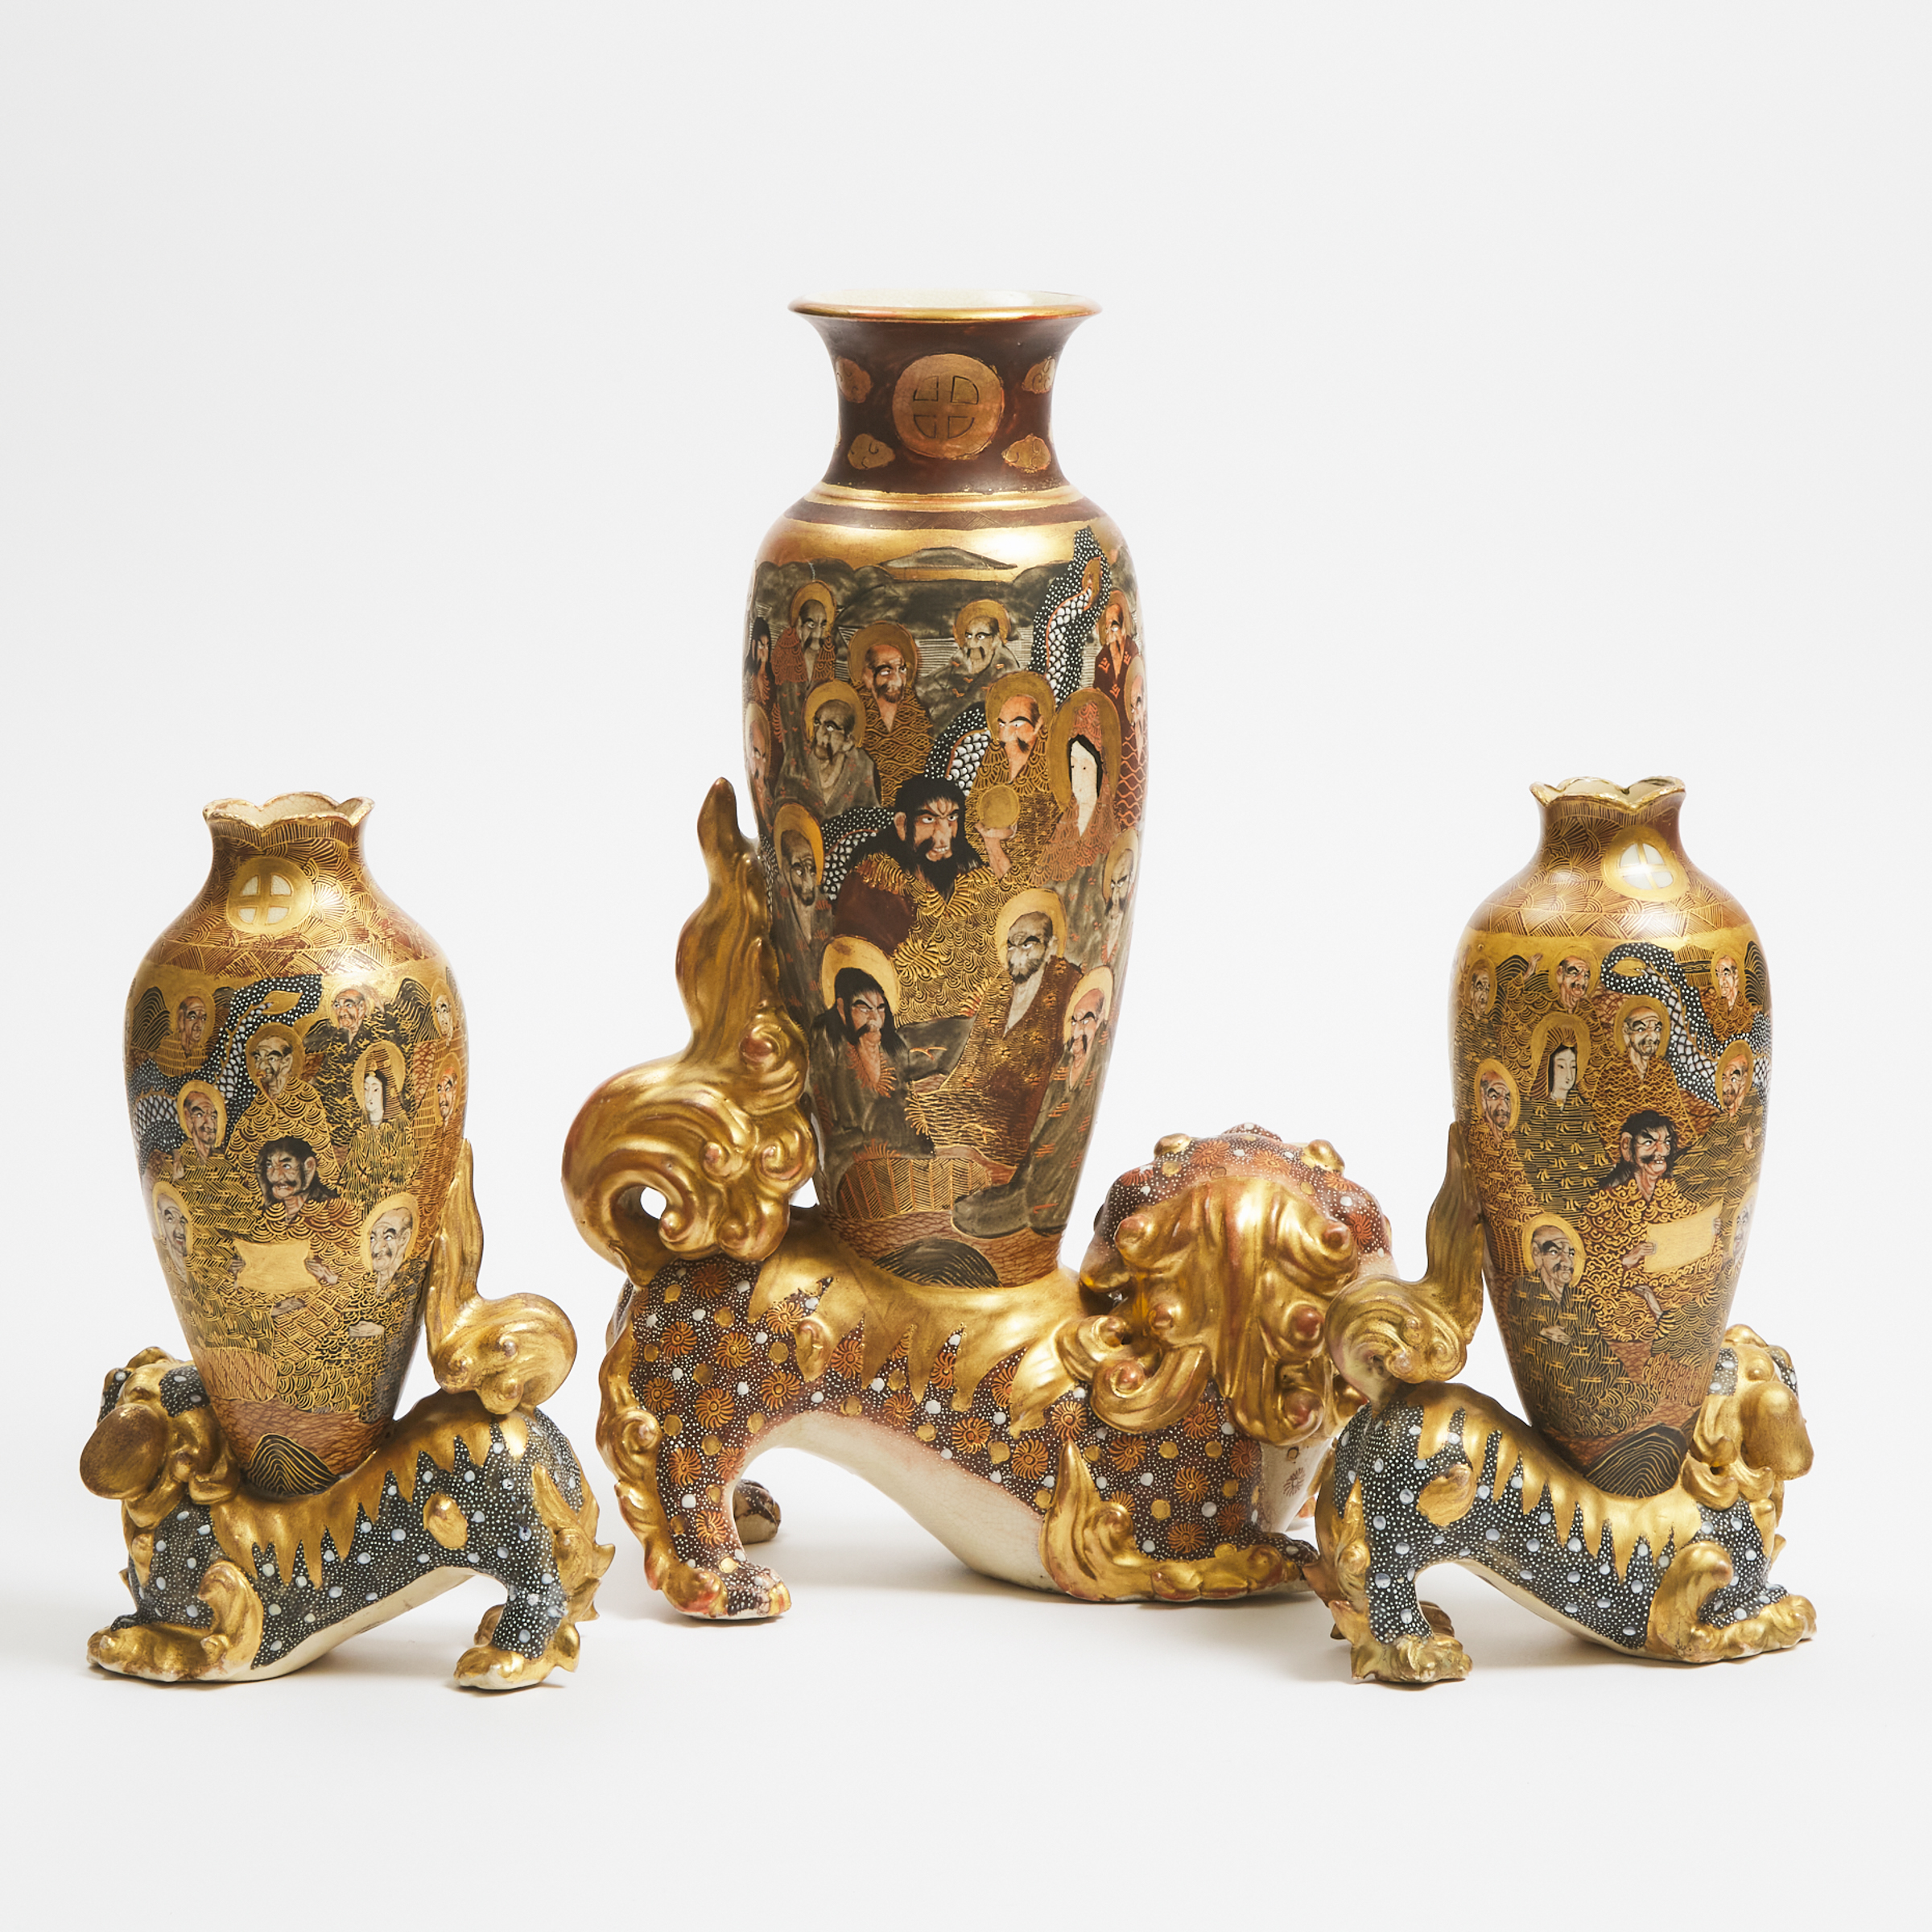 A Group of Three Large Satsuma 'Shishi' Vases, Meiji Period (1868-1912)